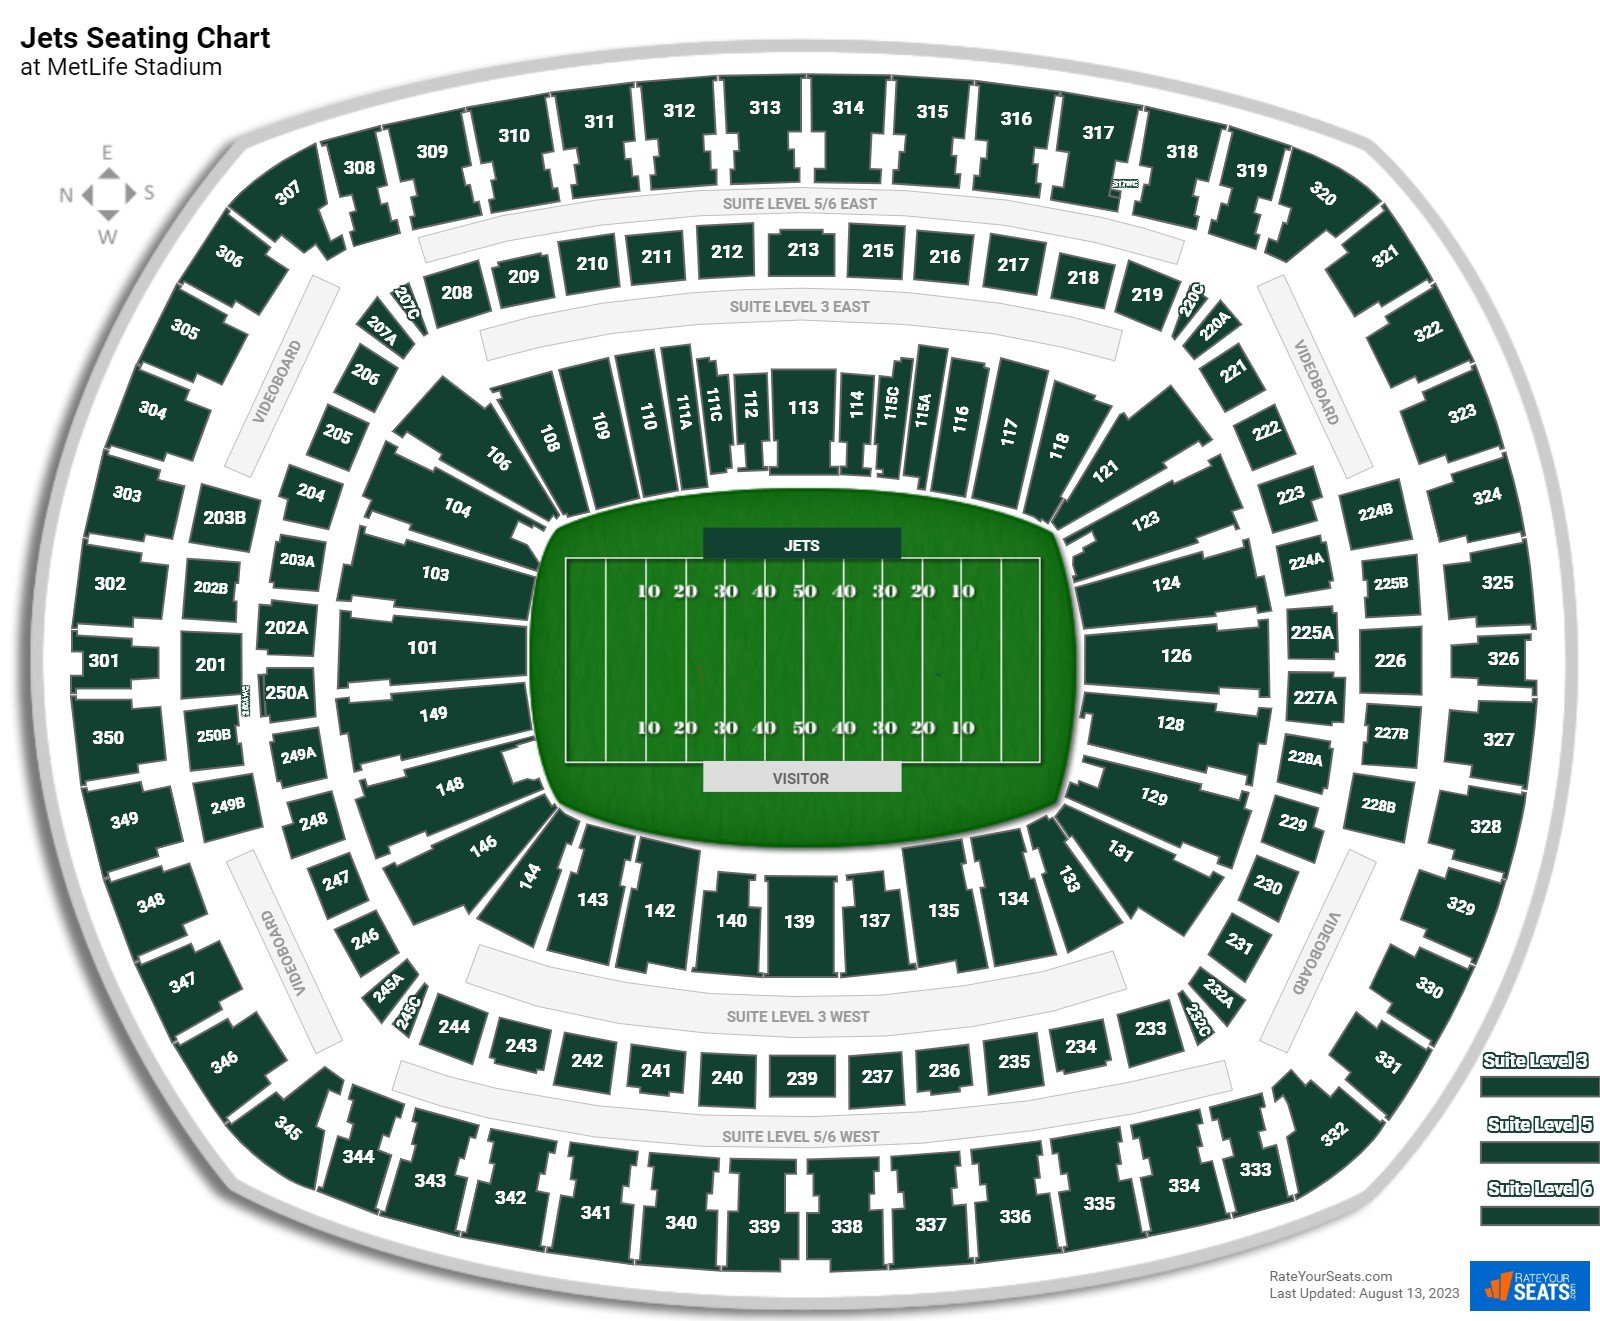 MetLife Stadium Seating Chart & Map